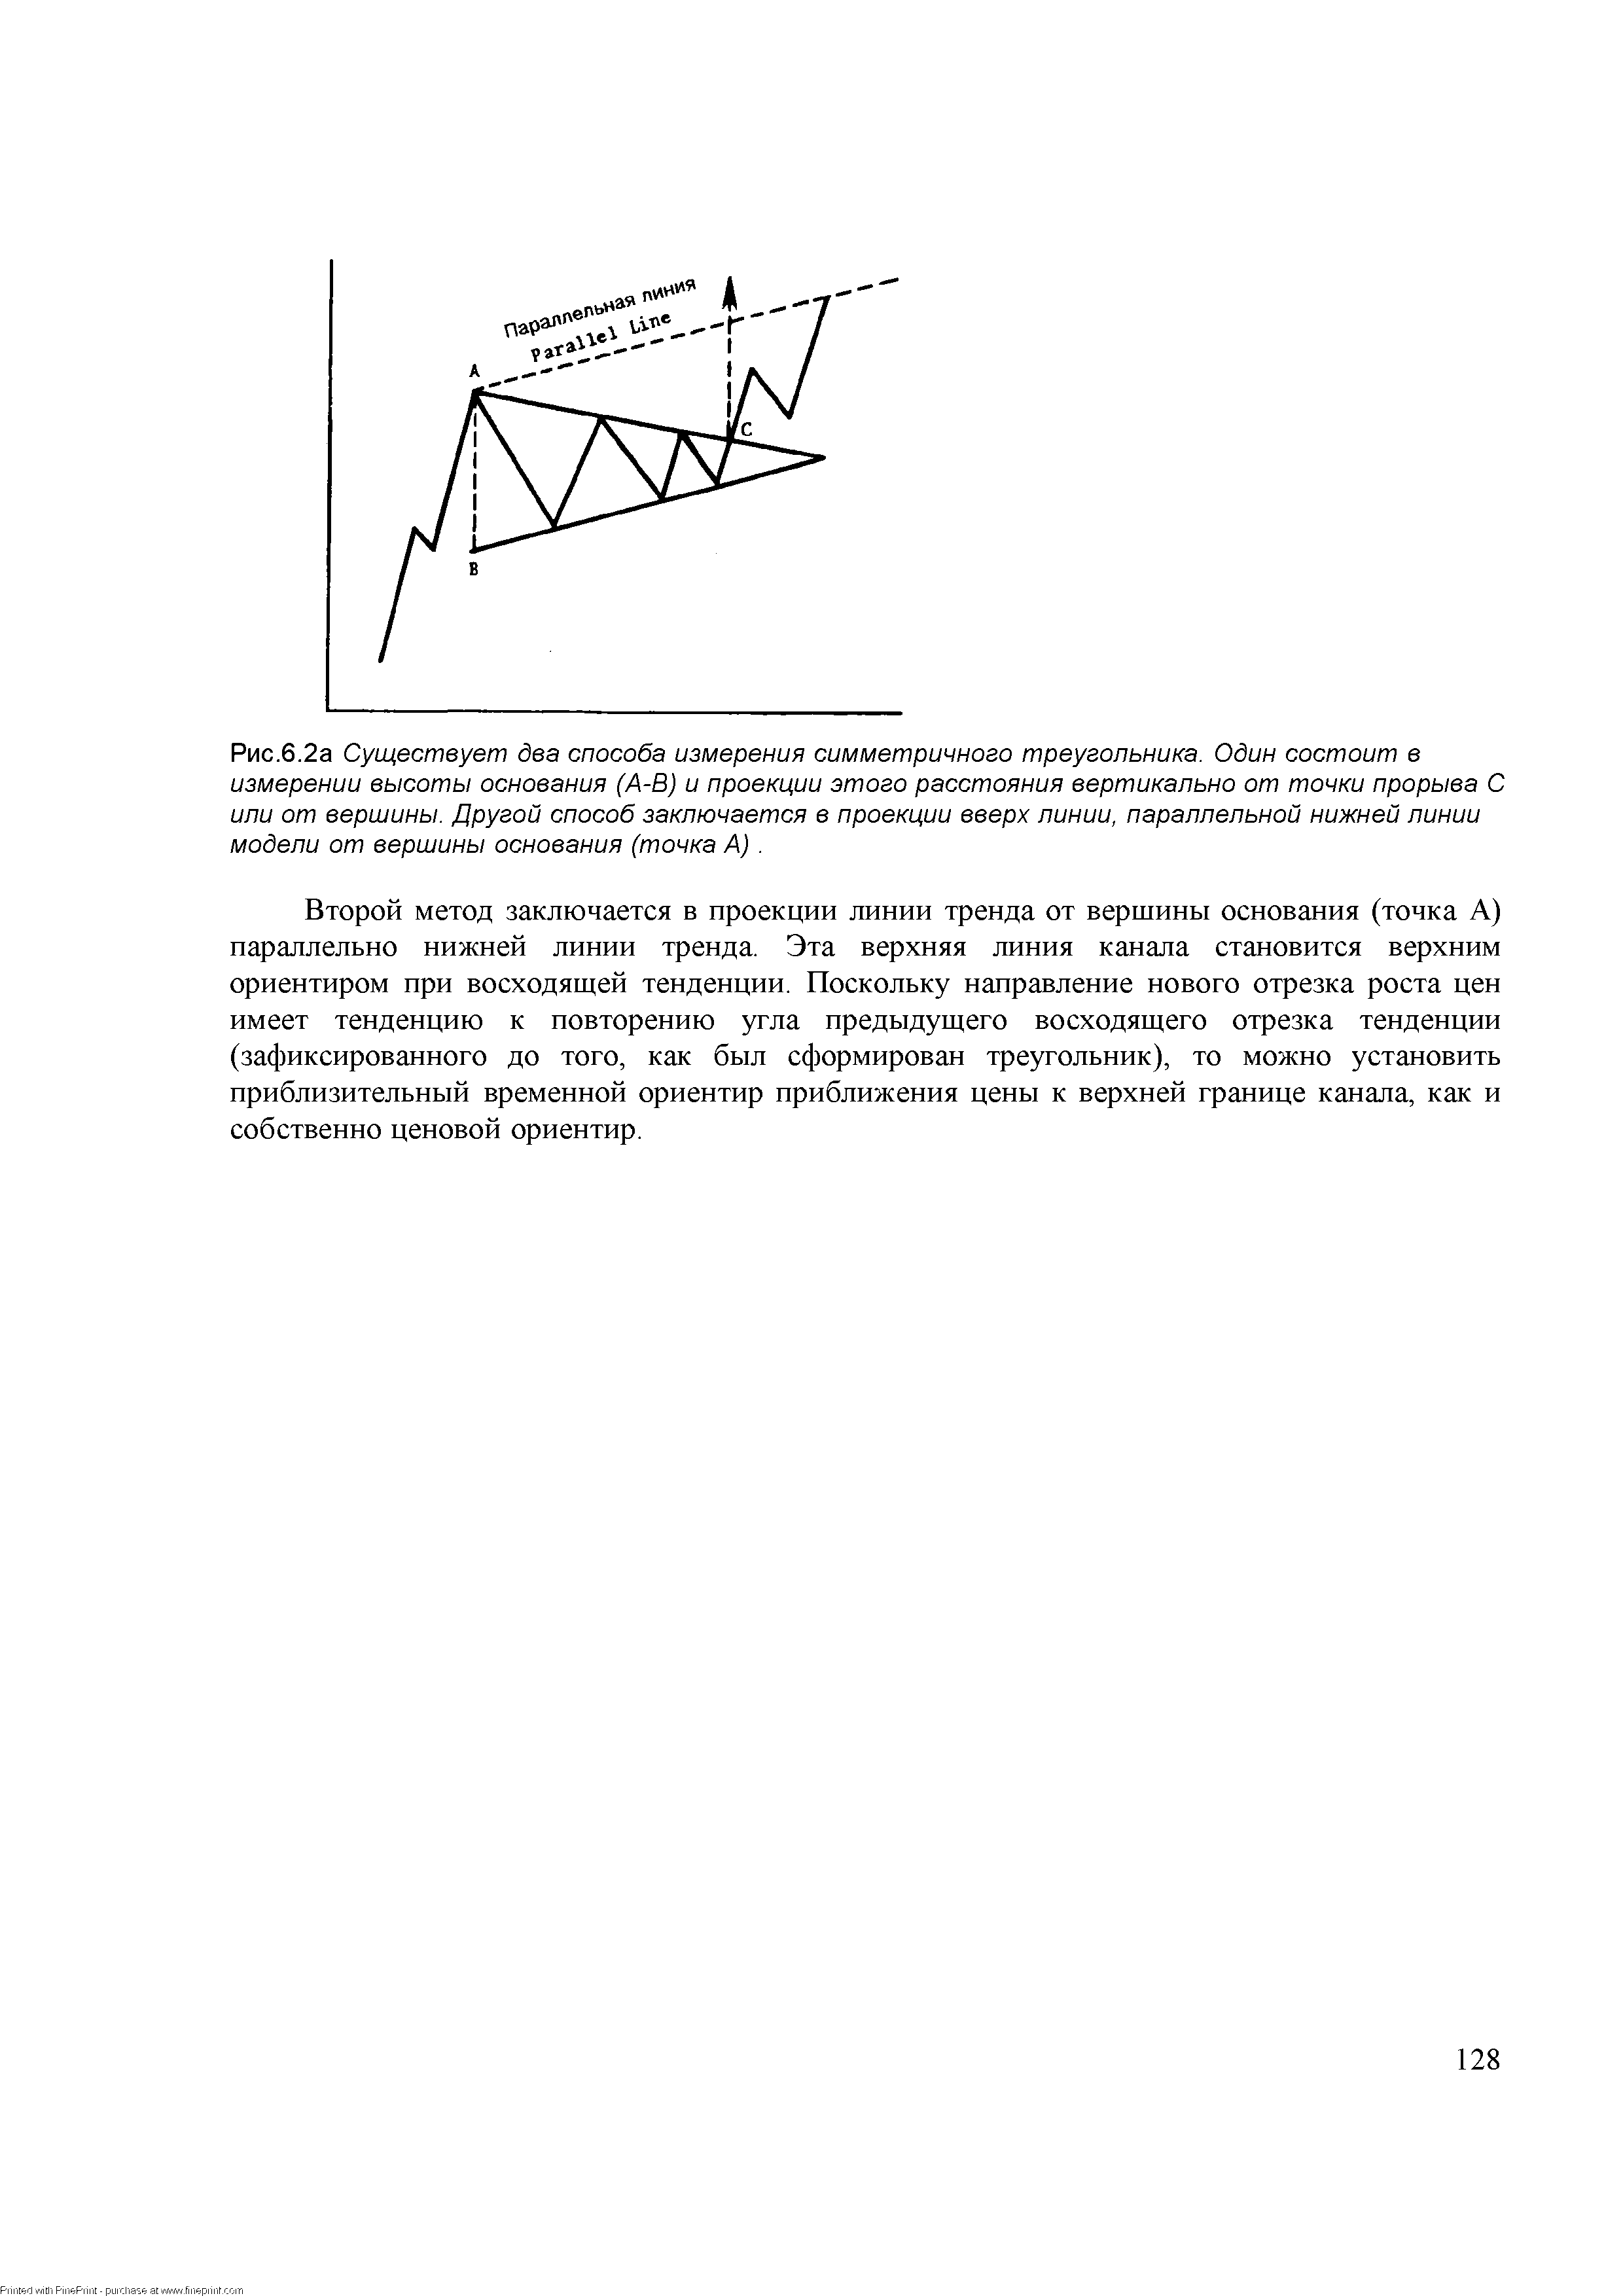 Рис.6.2а Существует два <a href="/info/181360">способа измерения</a> симметричного треугольника. Один состоит в измерении высоты основания (А-В) и проекции этого расстояния вертикально от точки прорыва С или от вершины. Другой способ заключается в проекции вверх линии, параллельной нижней линии модели от вершины основания (точка А). 
